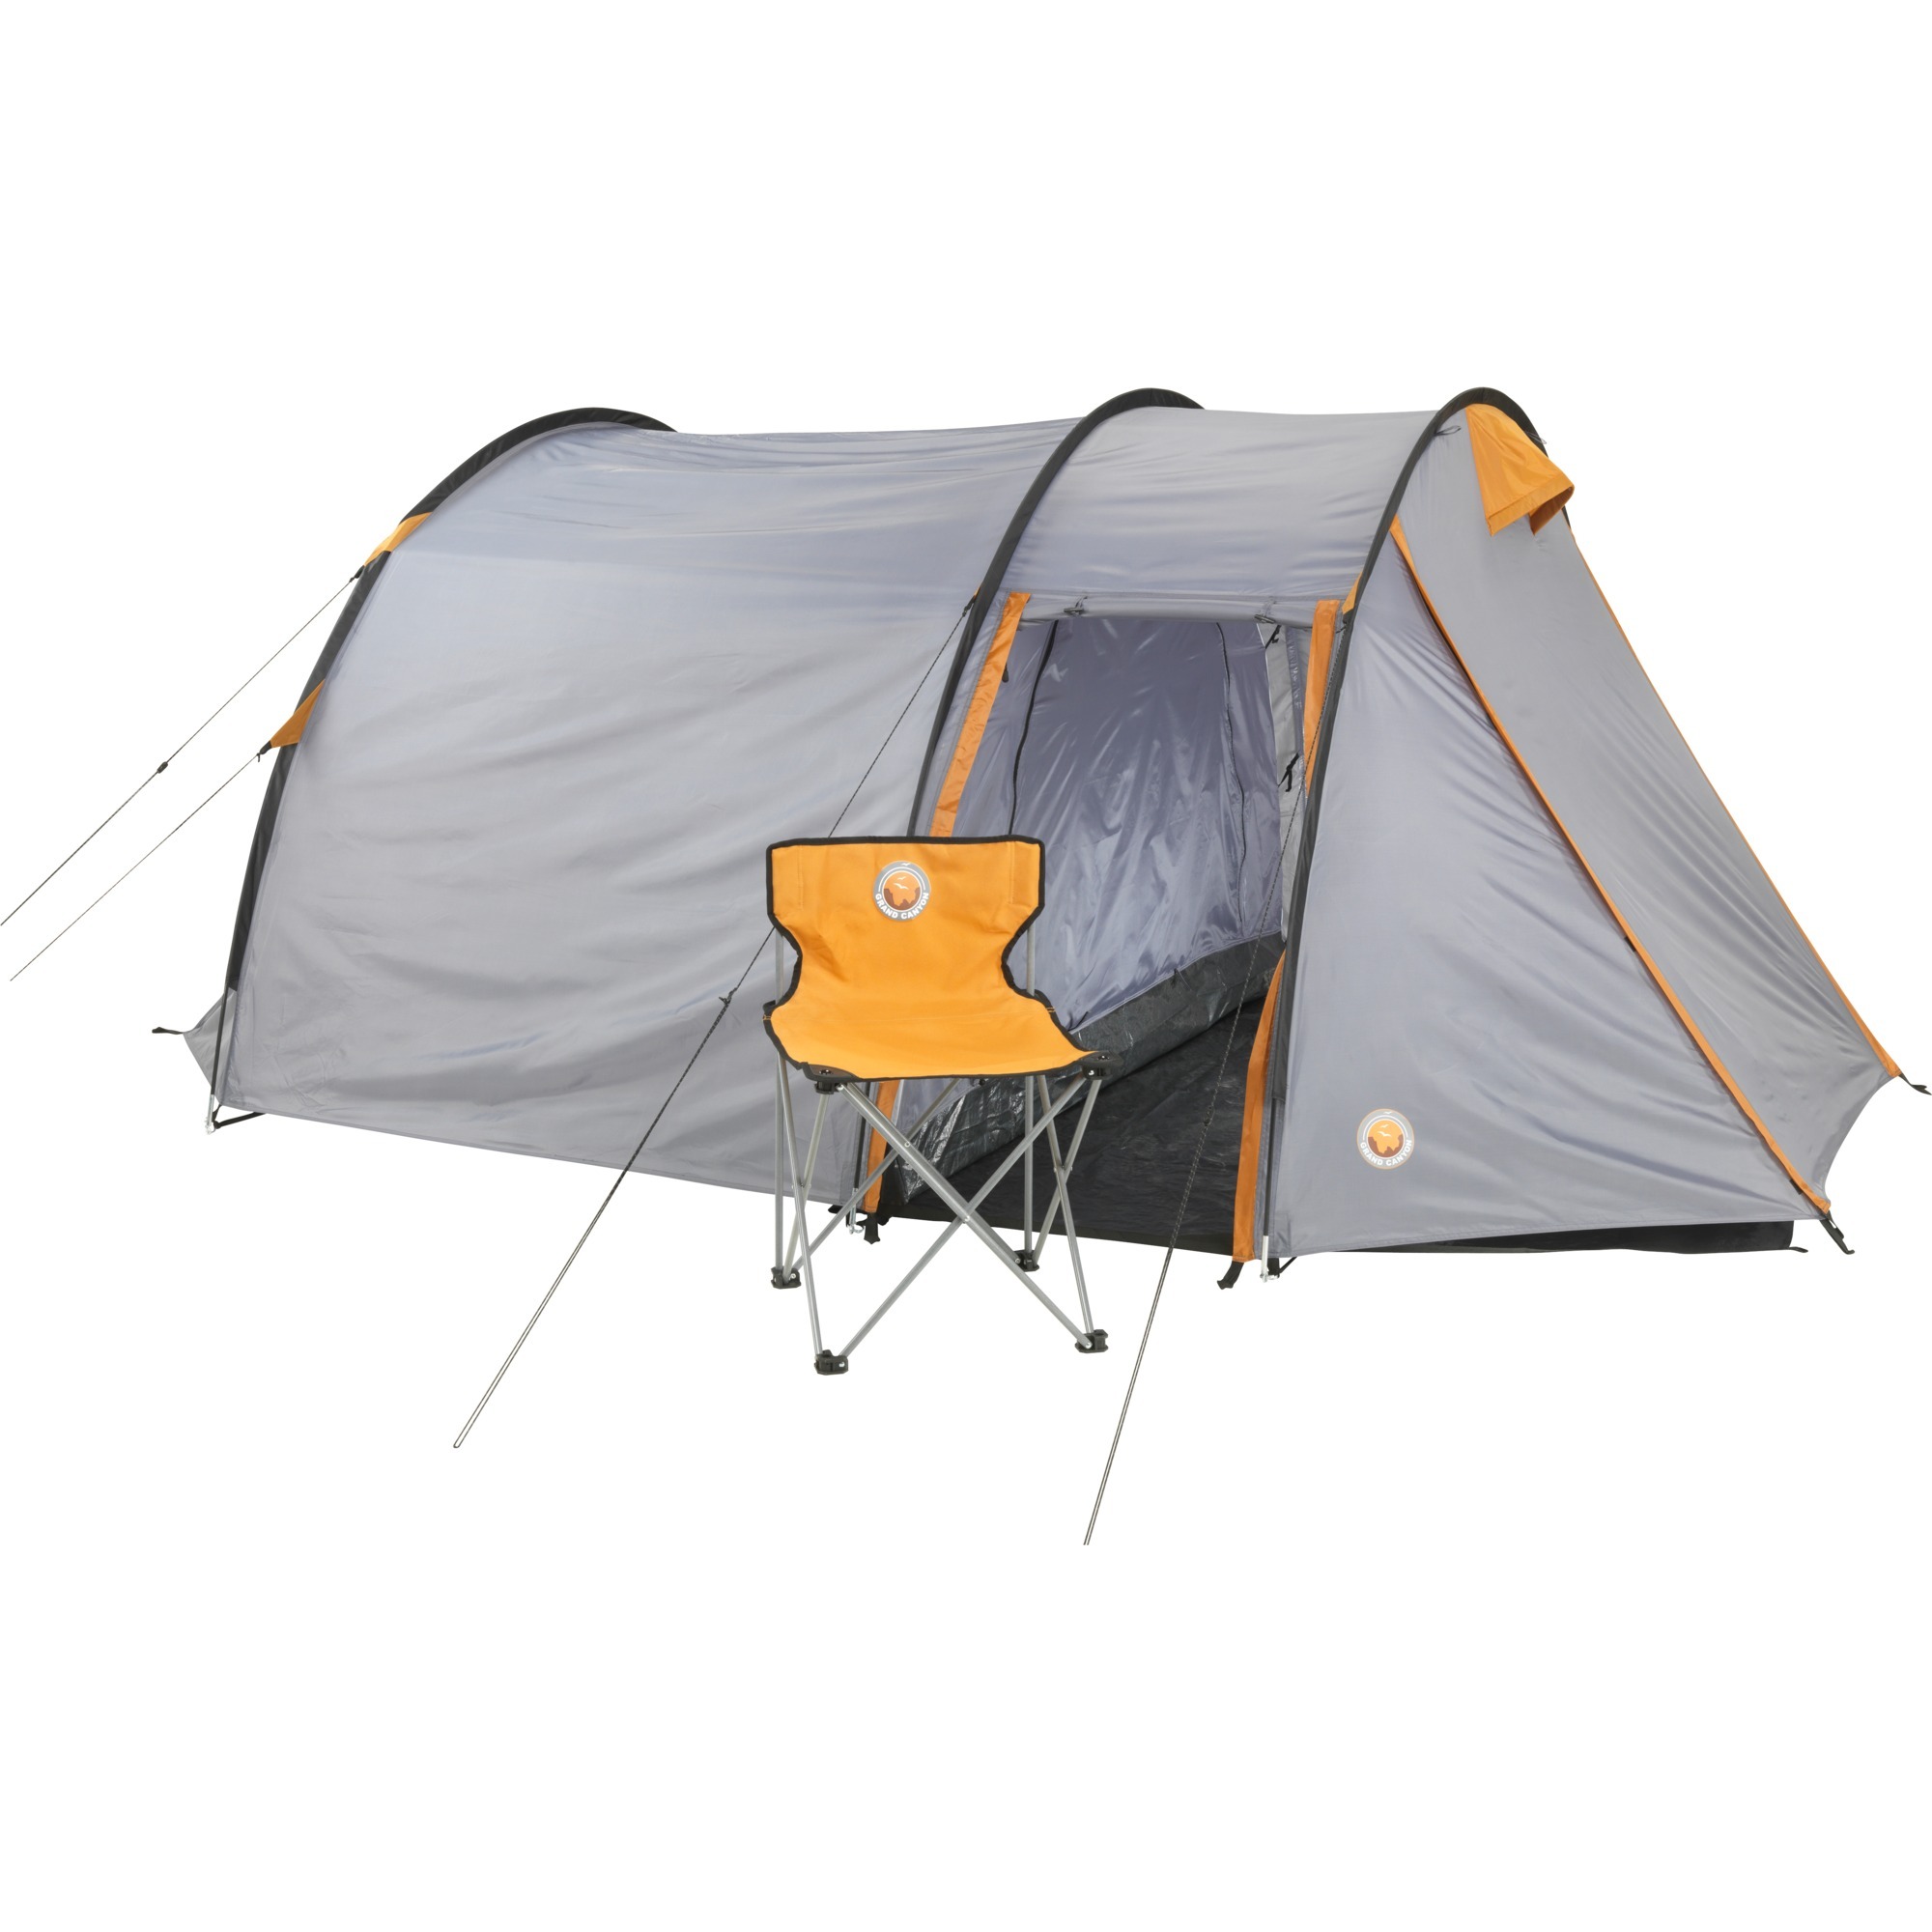 302018, Tent